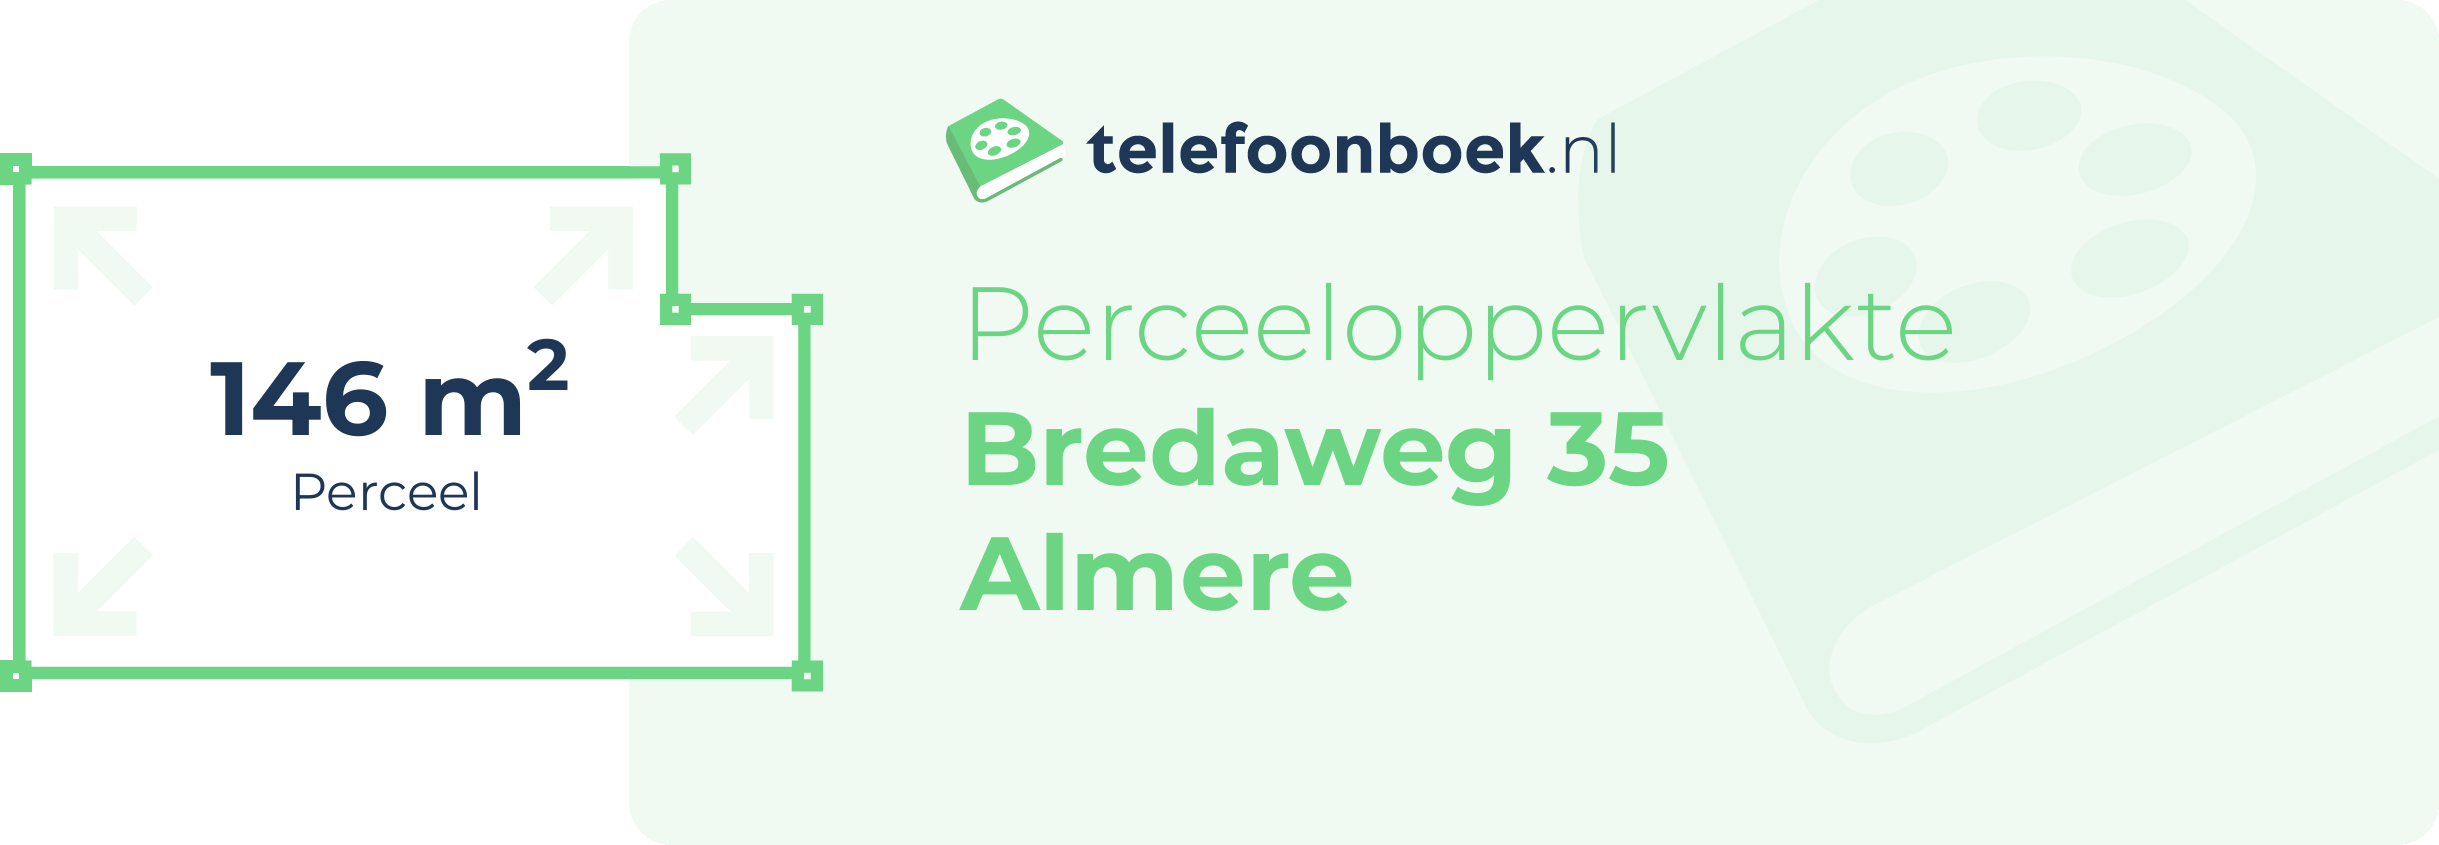 Perceeloppervlakte Bredaweg 35 Almere